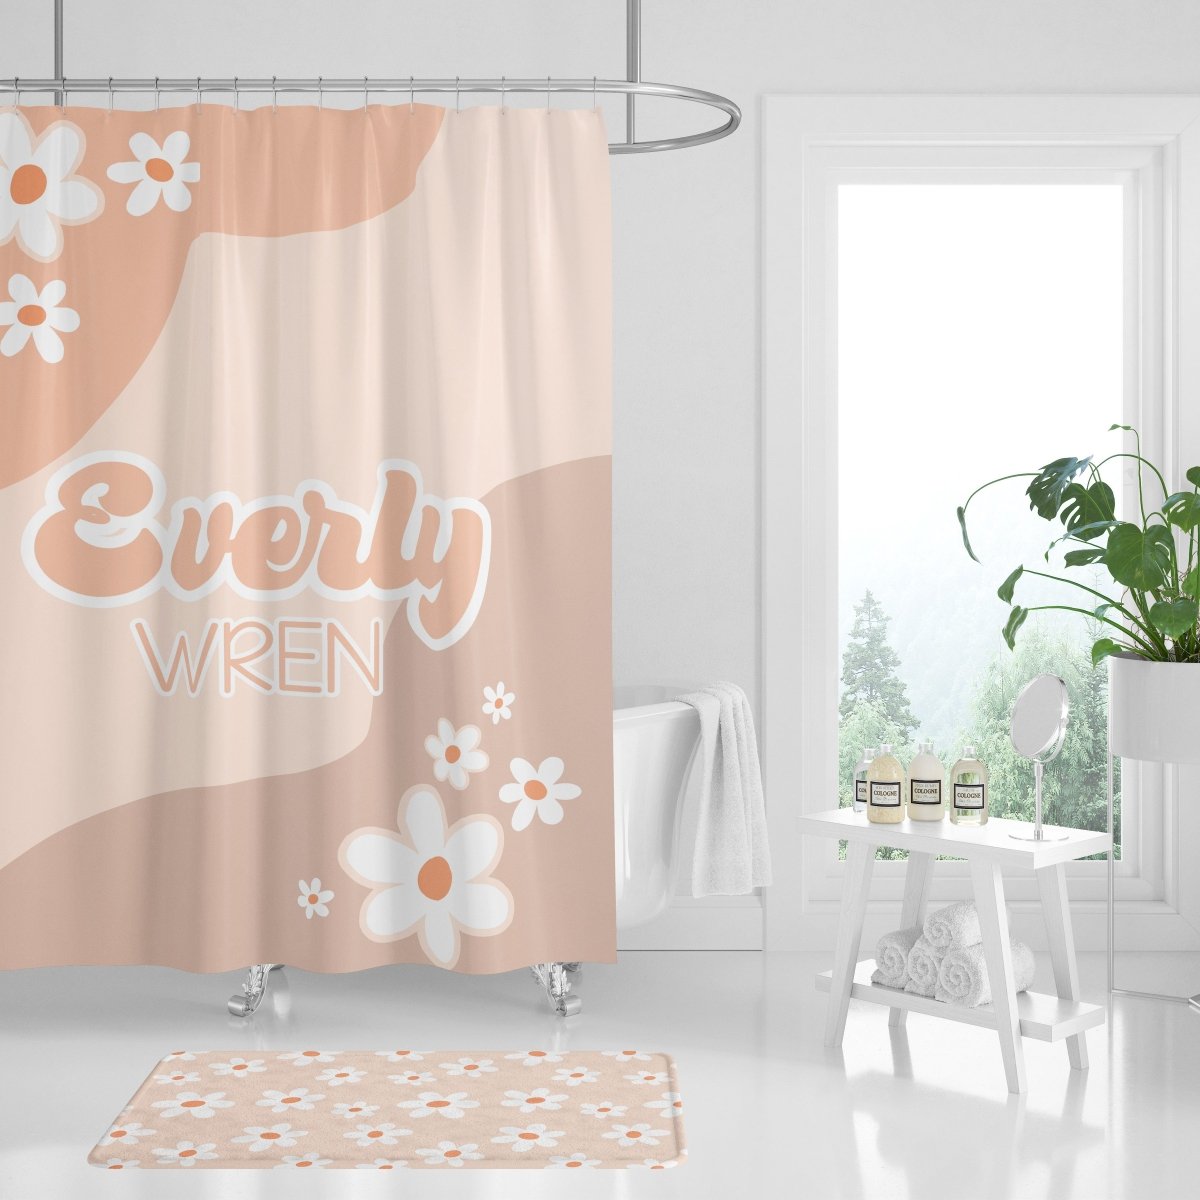 Daisy Bathroom Collection - Daisy, gender_girl, Theme_Floral